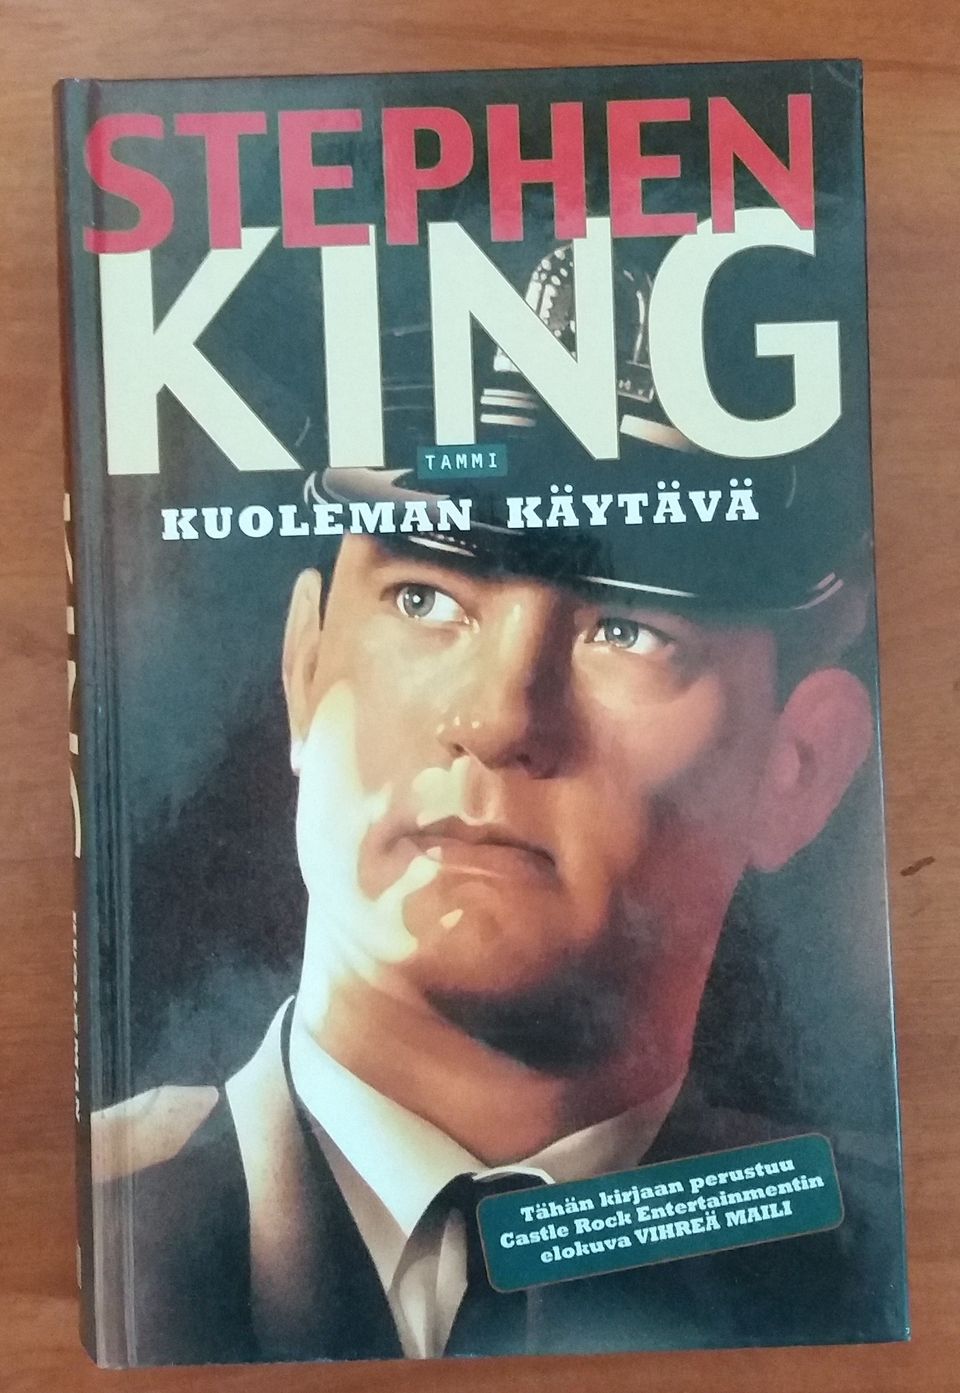 Stephen King KUOLEMAN KÄYTÄVÄ Tammi 3p 2000